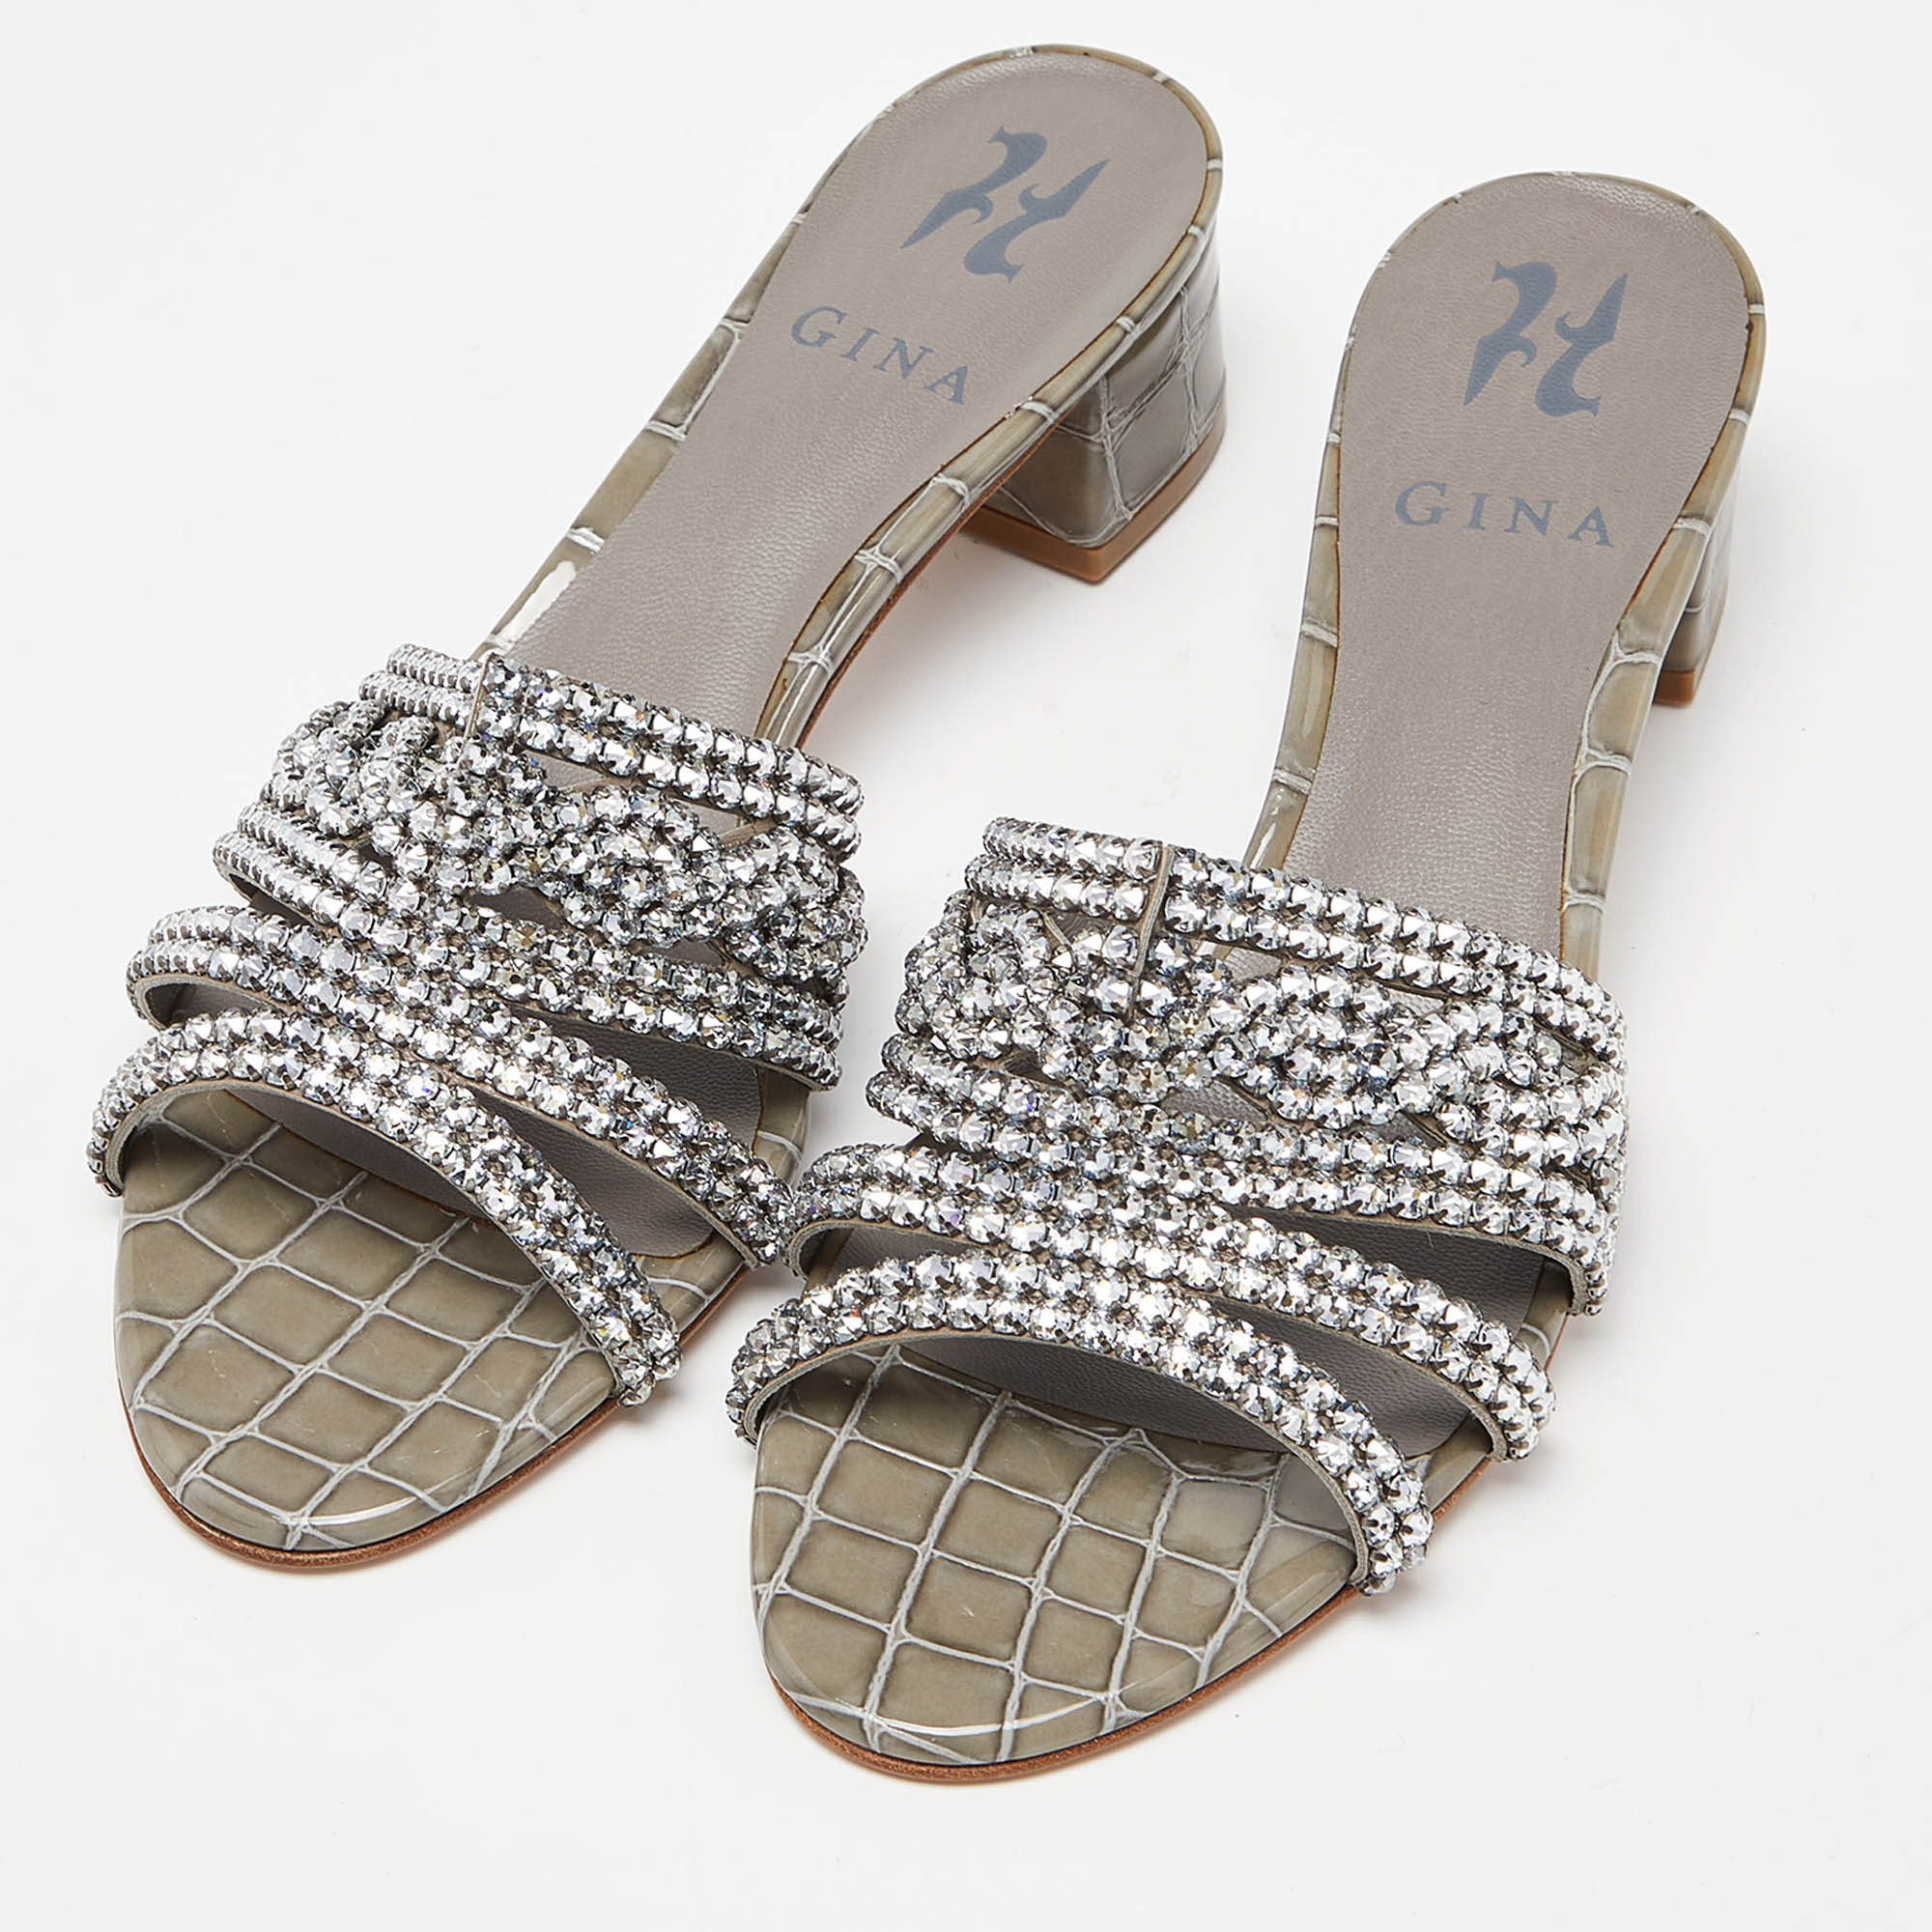 

Gina Grey Croc Embossed Patent Leather Crystal Embellished Slide Sandals Size